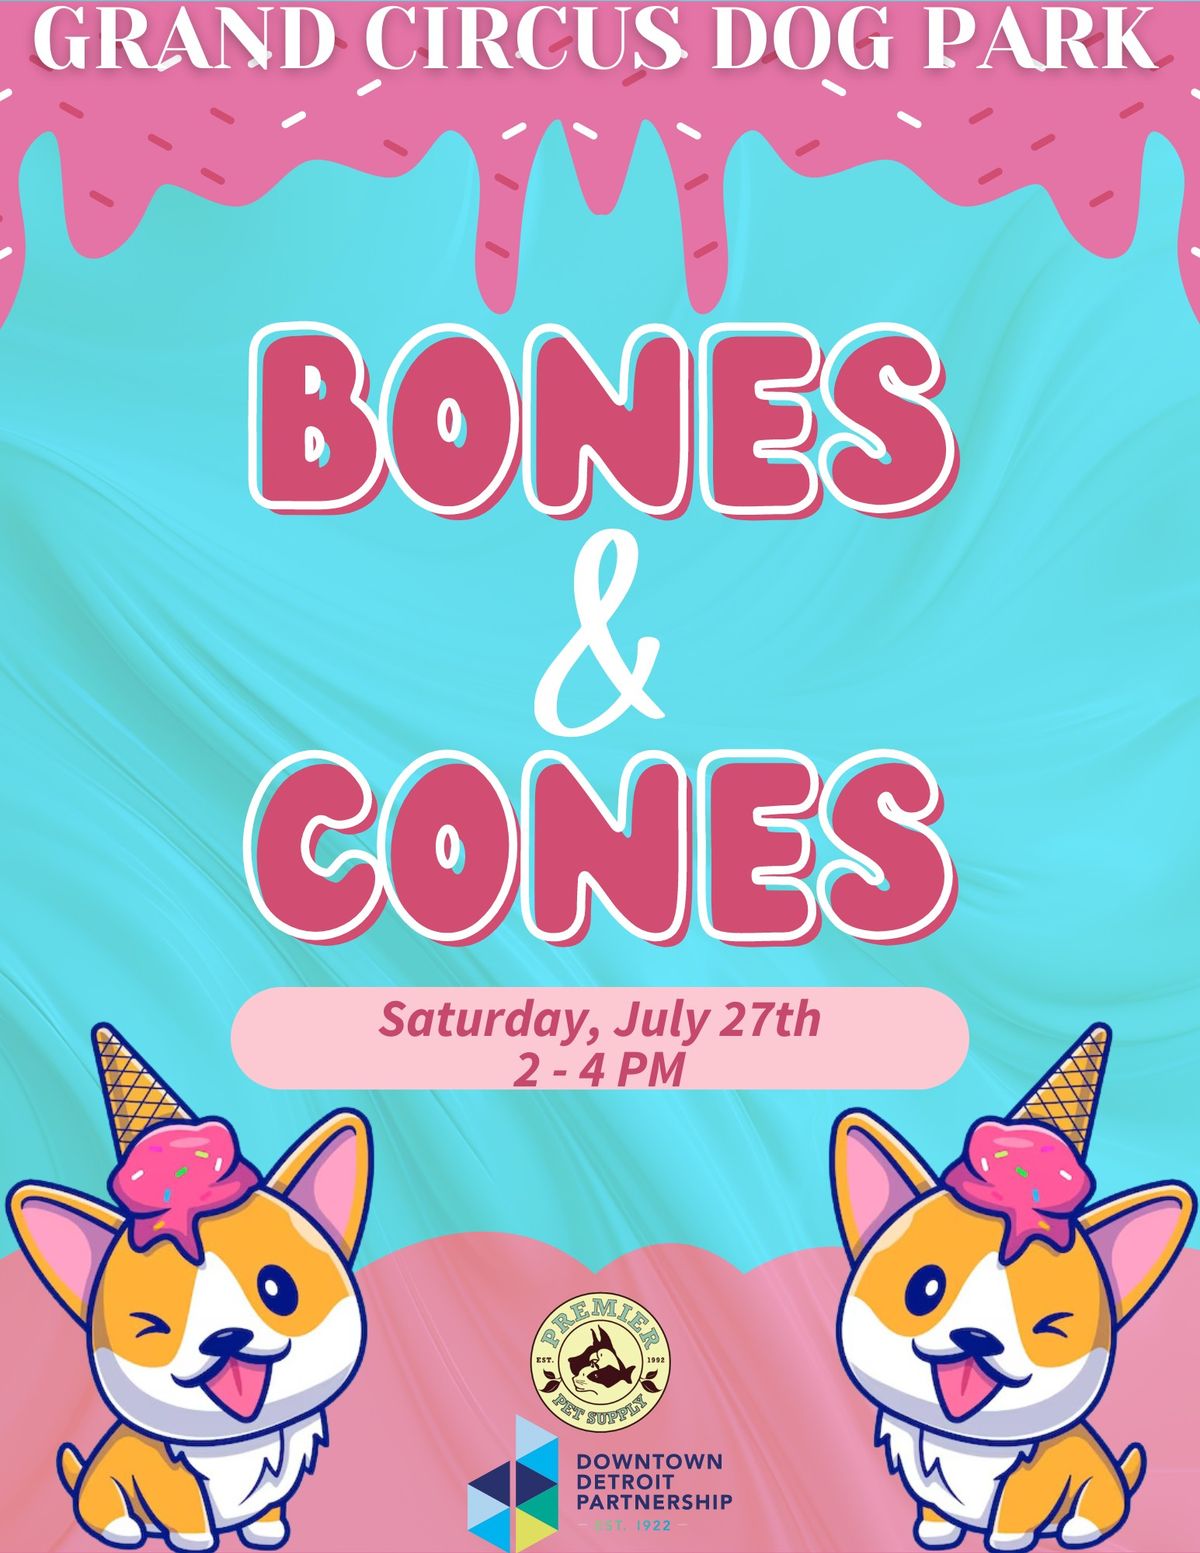 Bones & Cones @ Grand Circus Dog Park!